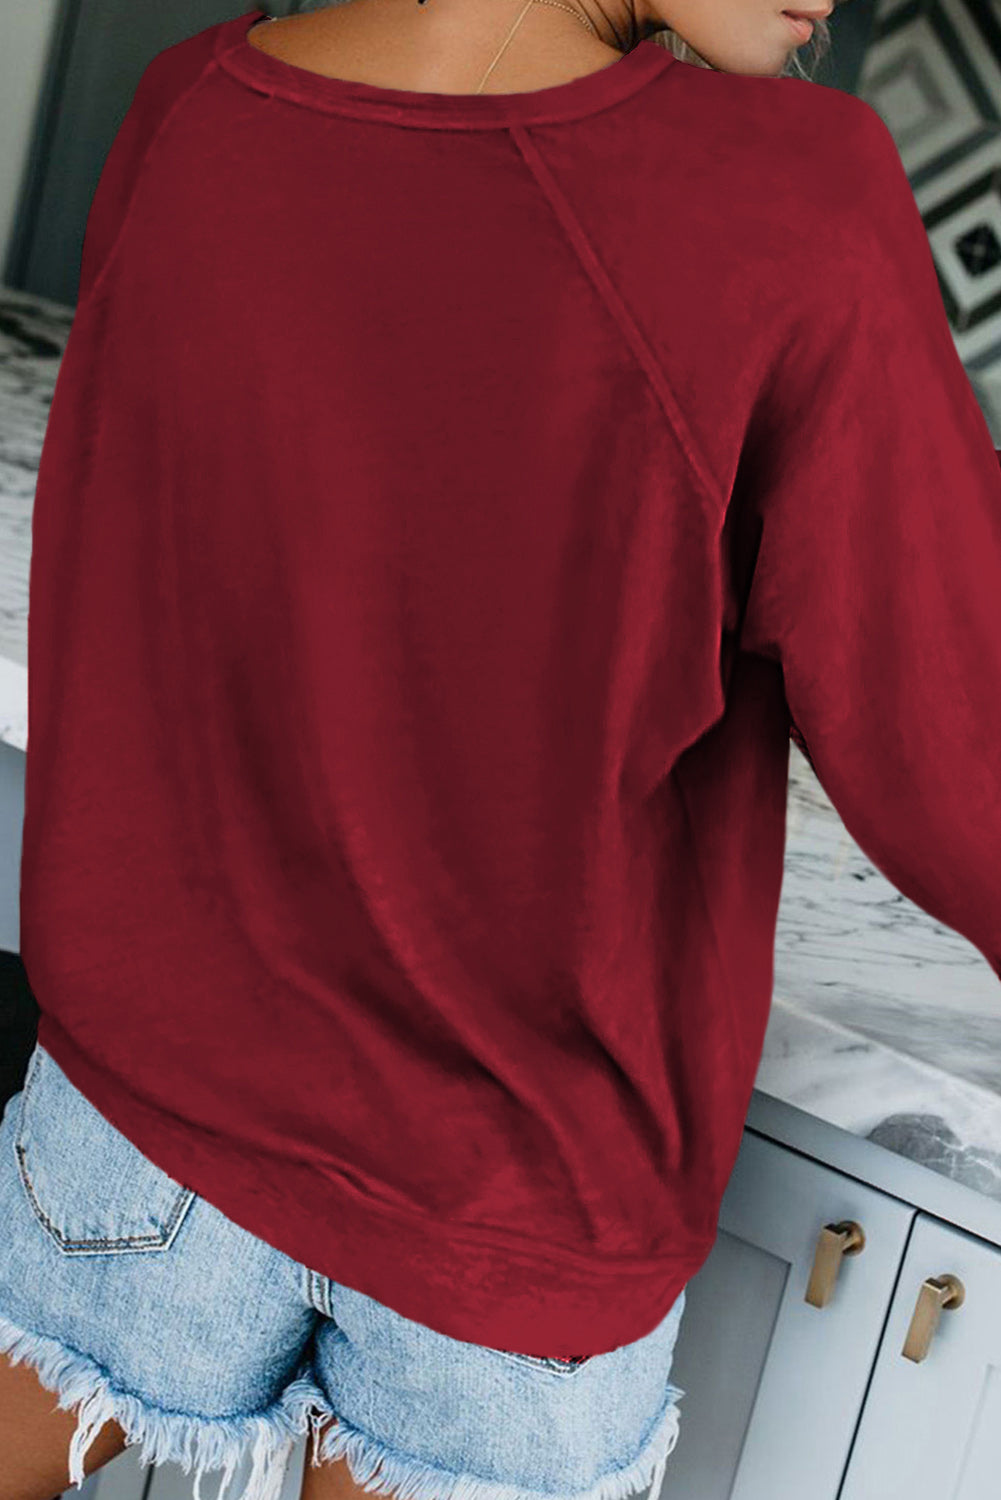 Blank Apparel – pulover iz mešanice francoskega frotirja